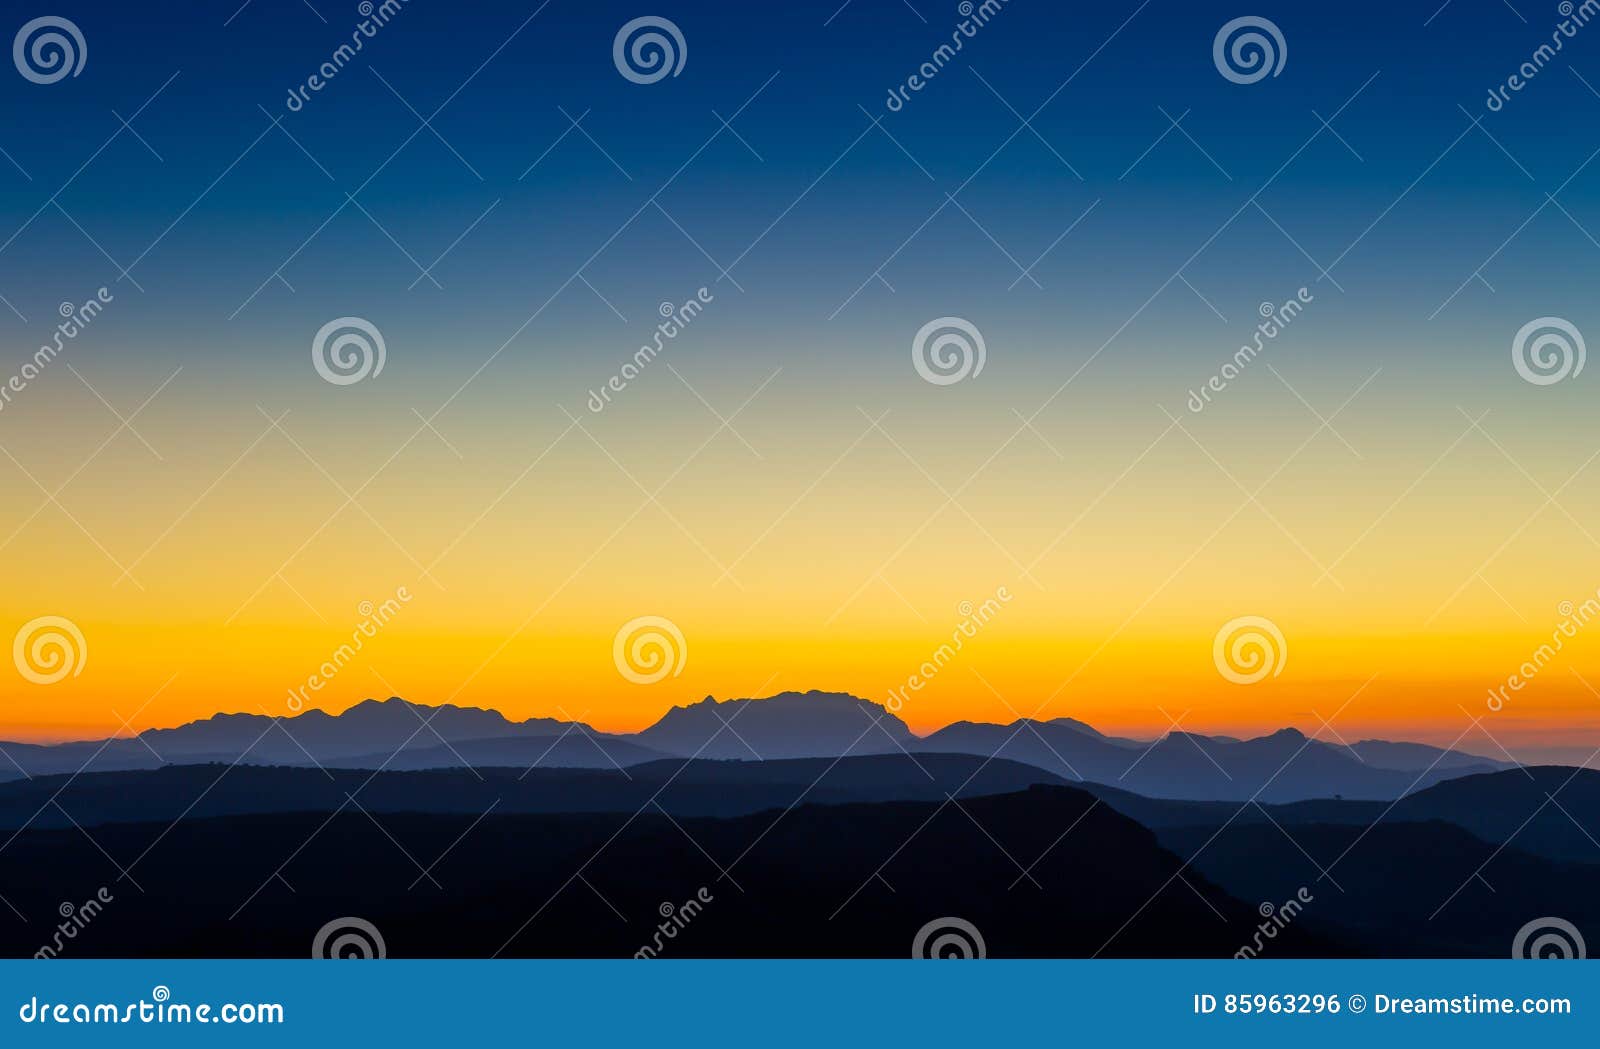 mountain silhouette